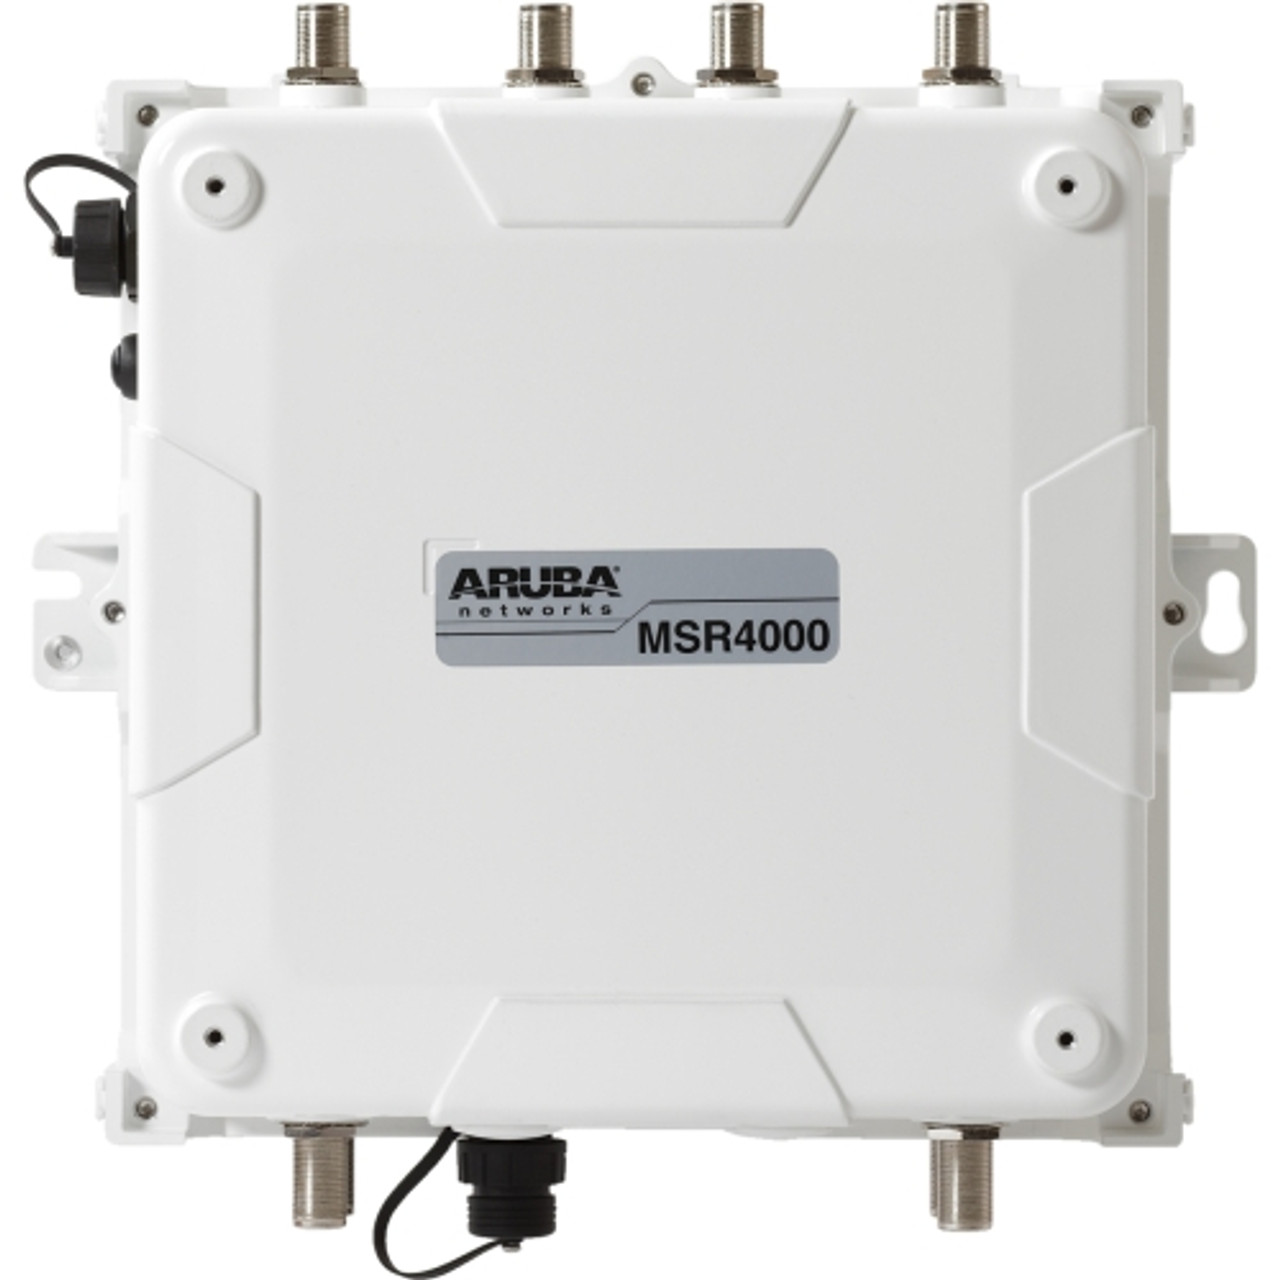 MSR4K43N0 Aruba Networks AirMesh MSR4000 IEEE 802.11n Wireless Router (Refurbished)